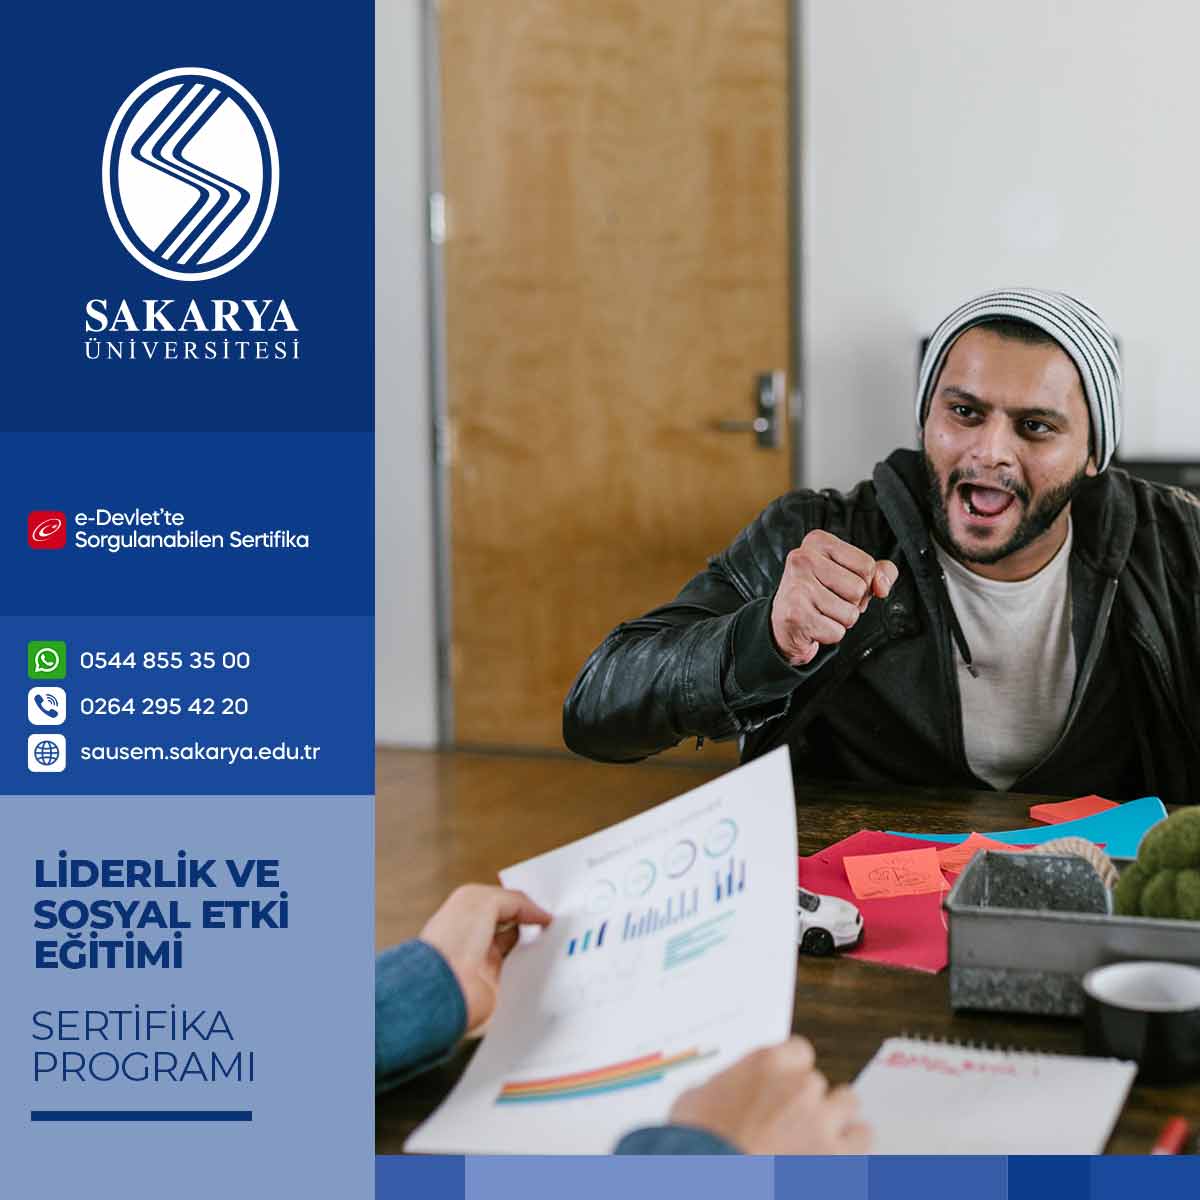 Liderlik ve Sosyal Etki Eğitimi Sertifika Programı